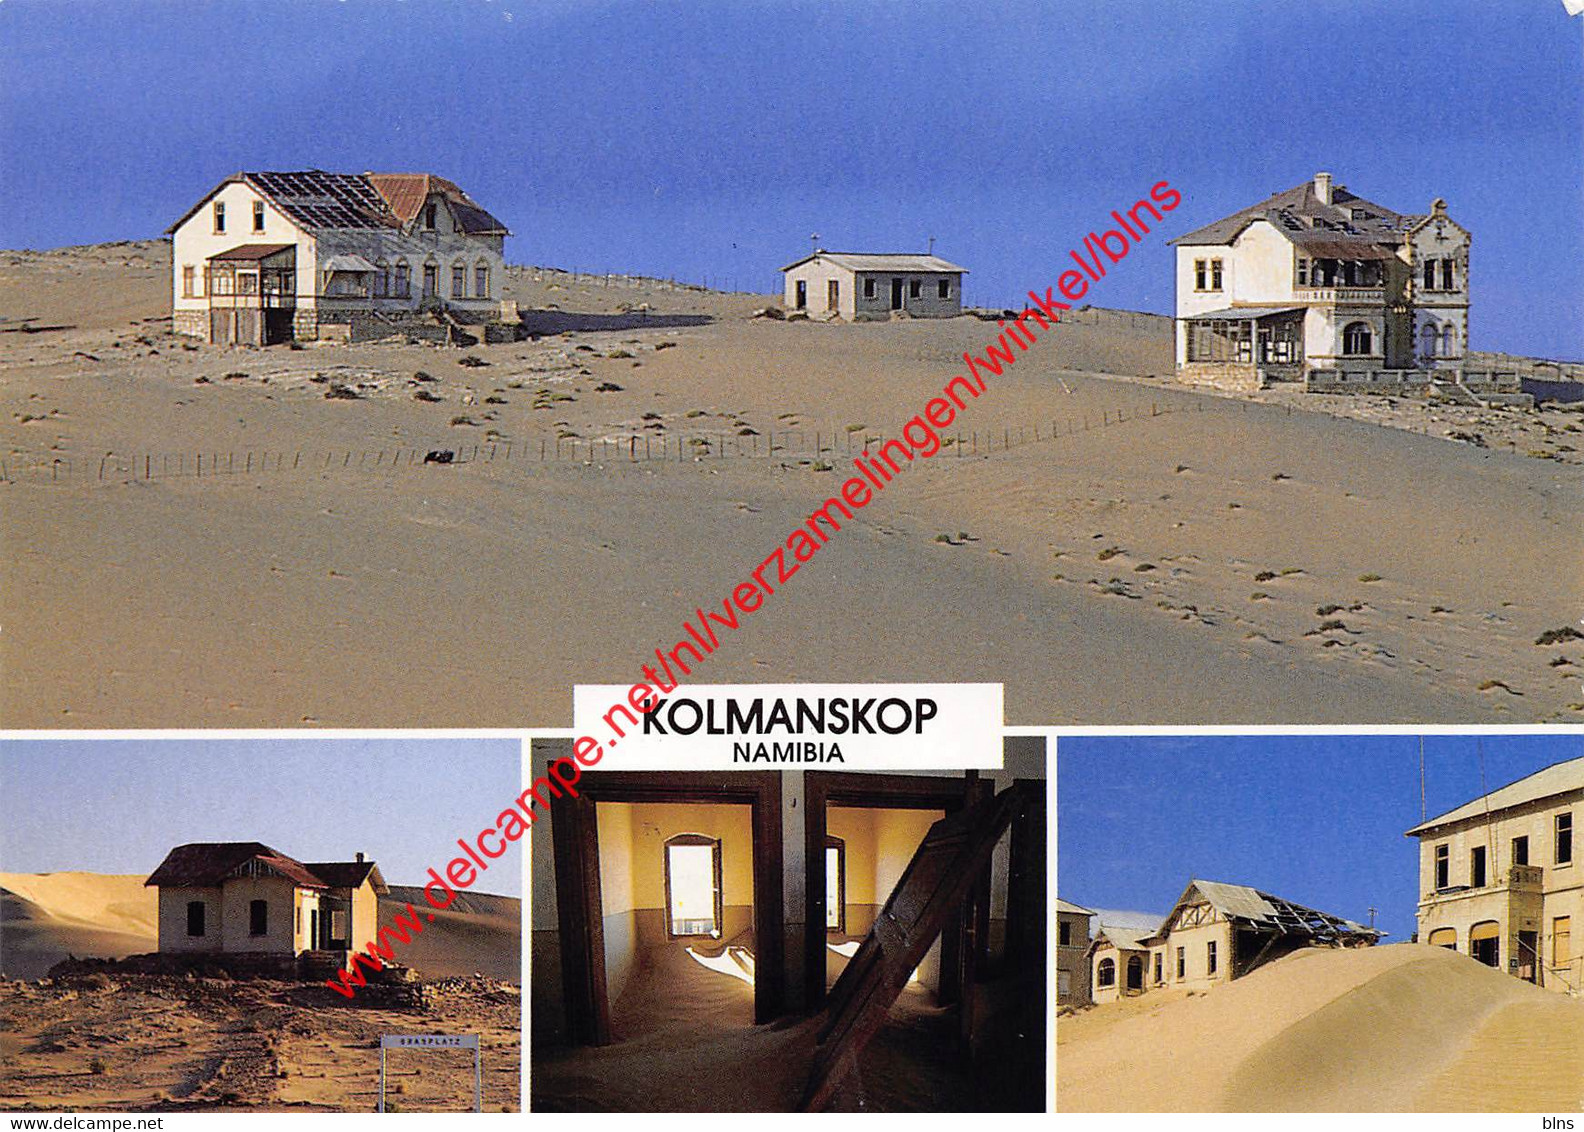 Namibia - Kolmanskop - Namibia